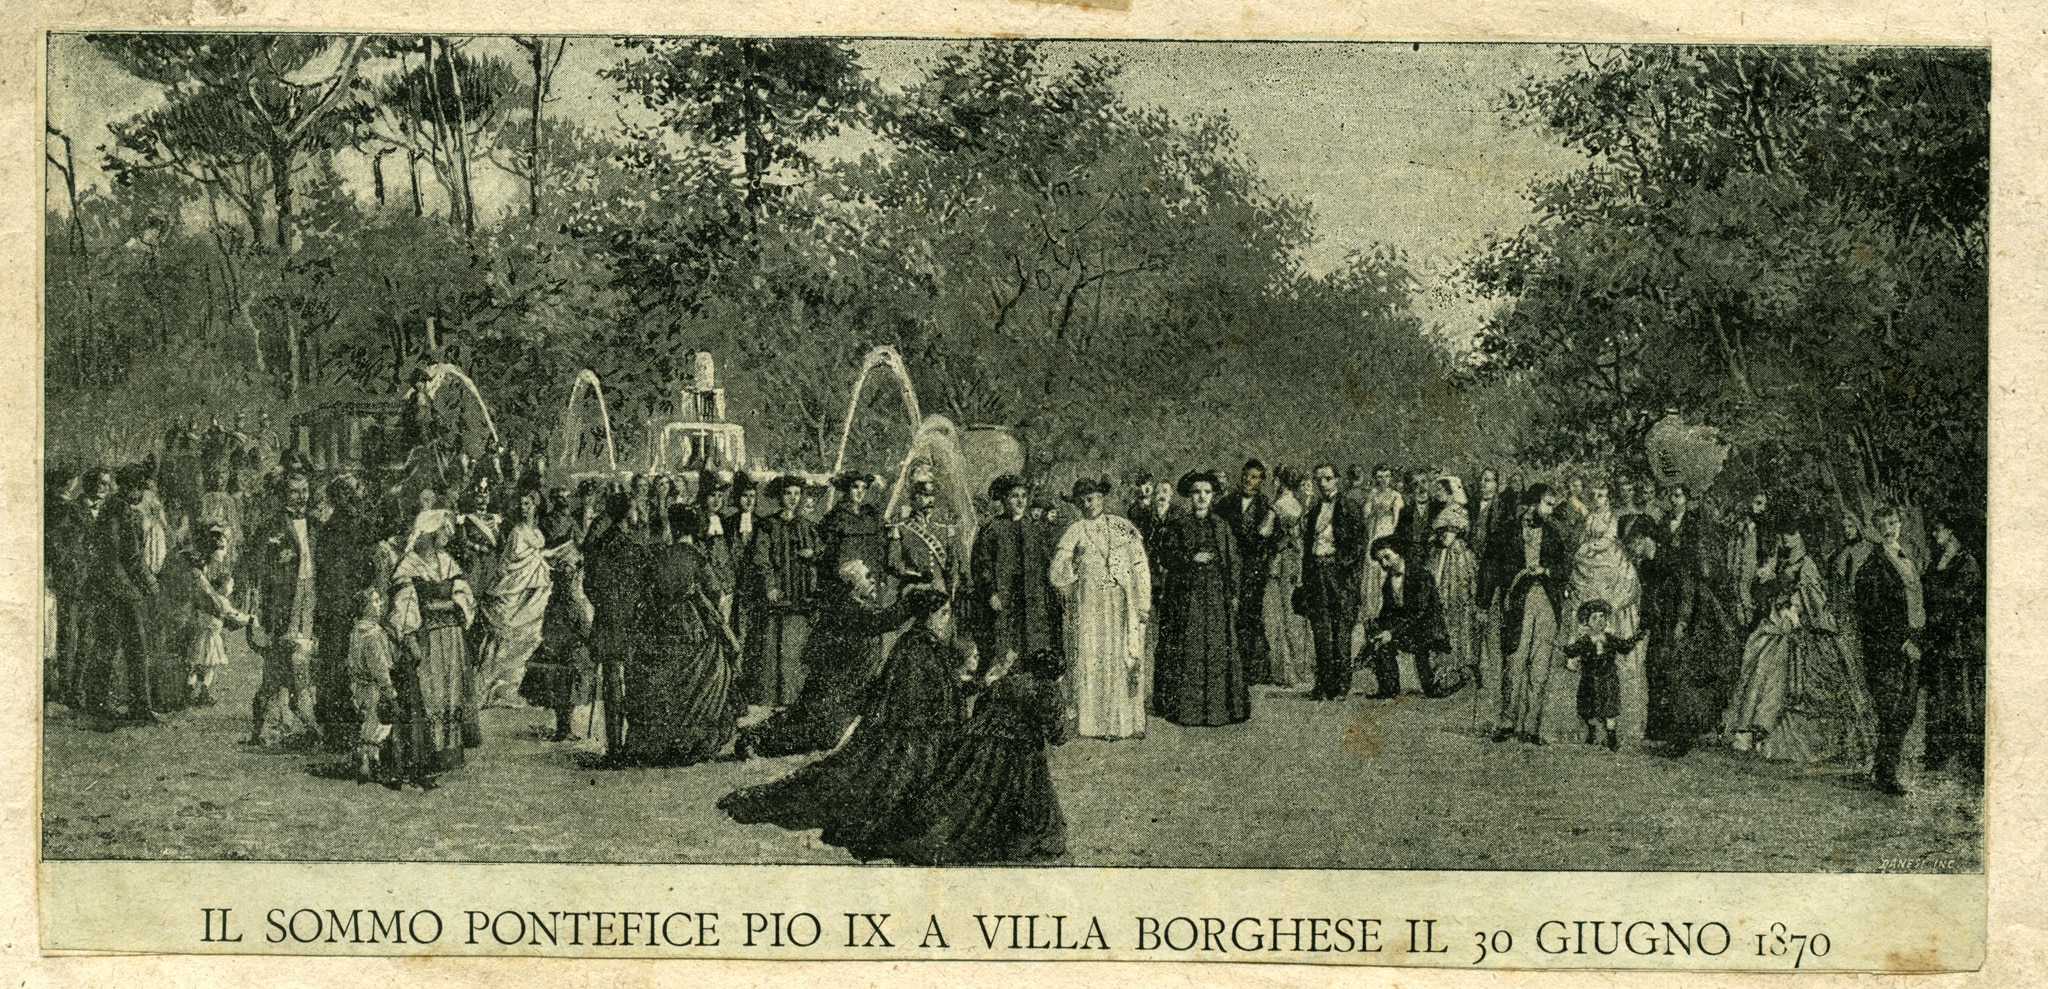 Incisione raffigurante Pio IX nei giardini di Villa Borghese il 30 giugno 1870